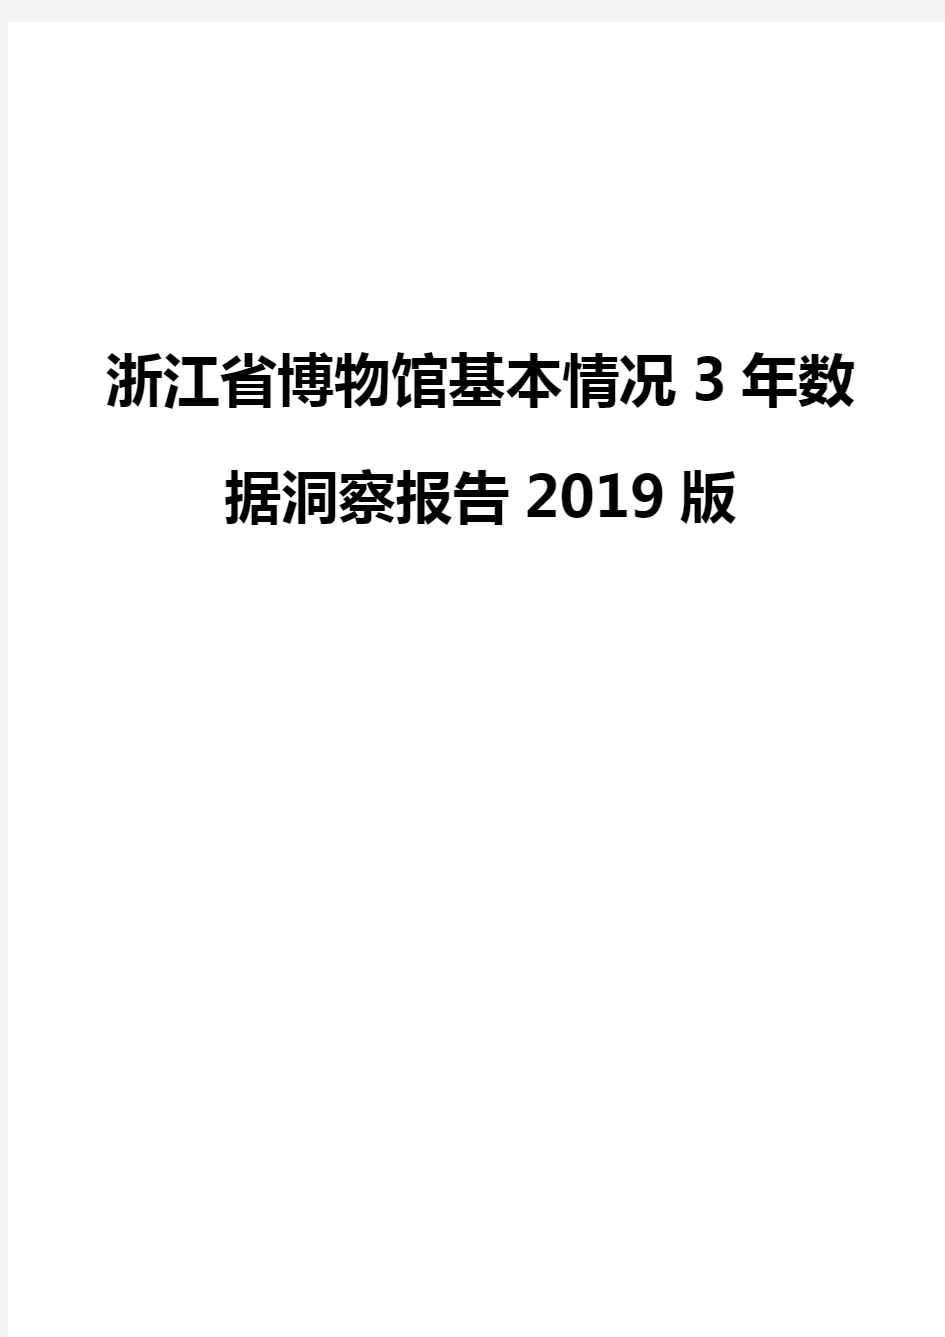 浙江省博物馆基本情况3年数据洞察报告2019版